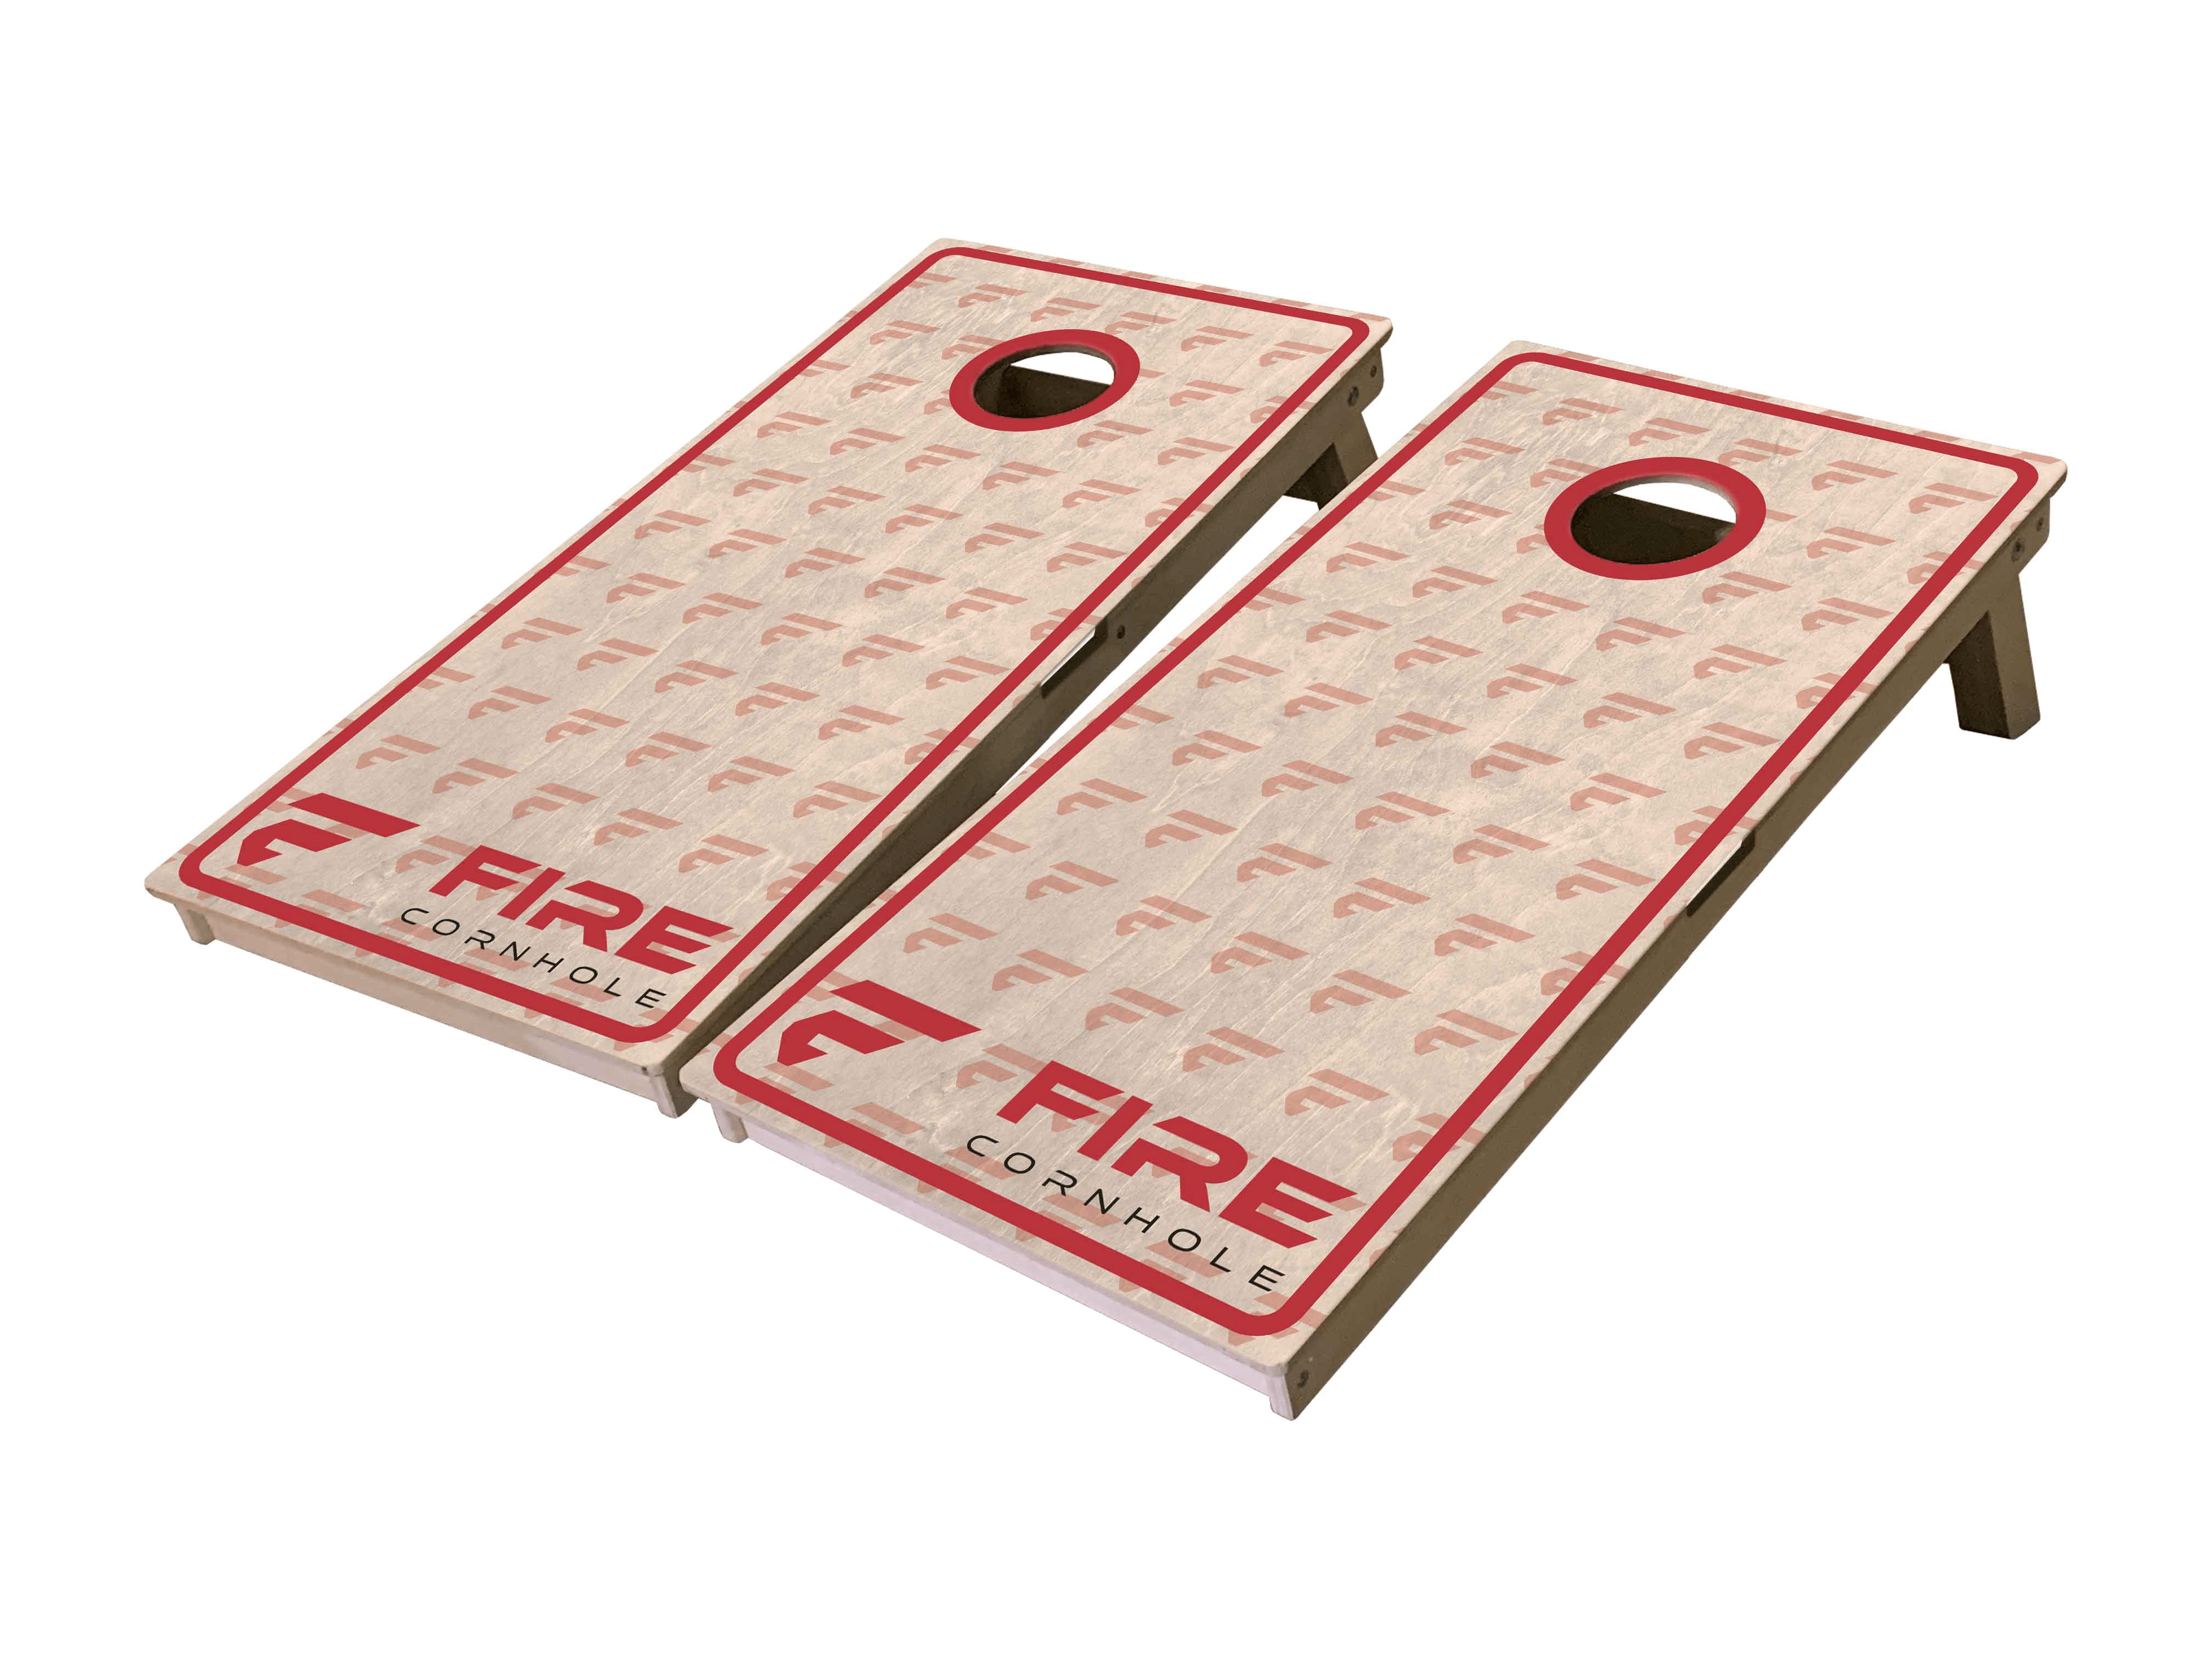 Fire Cornhole Mini Cornhole Boards with natural wood finish and F logo pattern